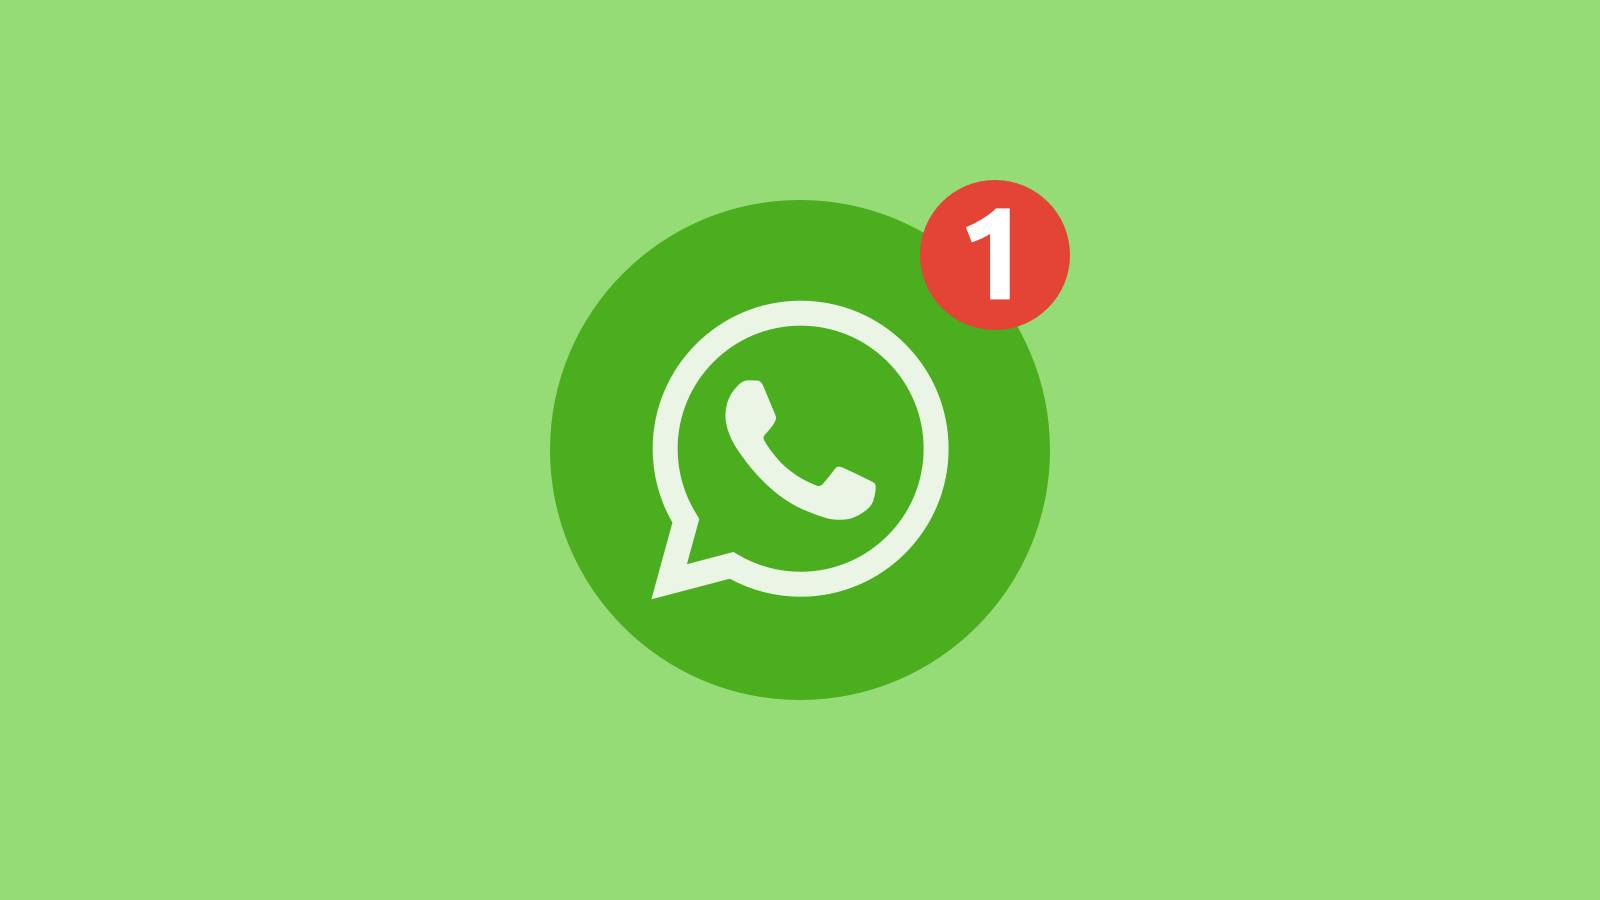 WhatsApp försvinner